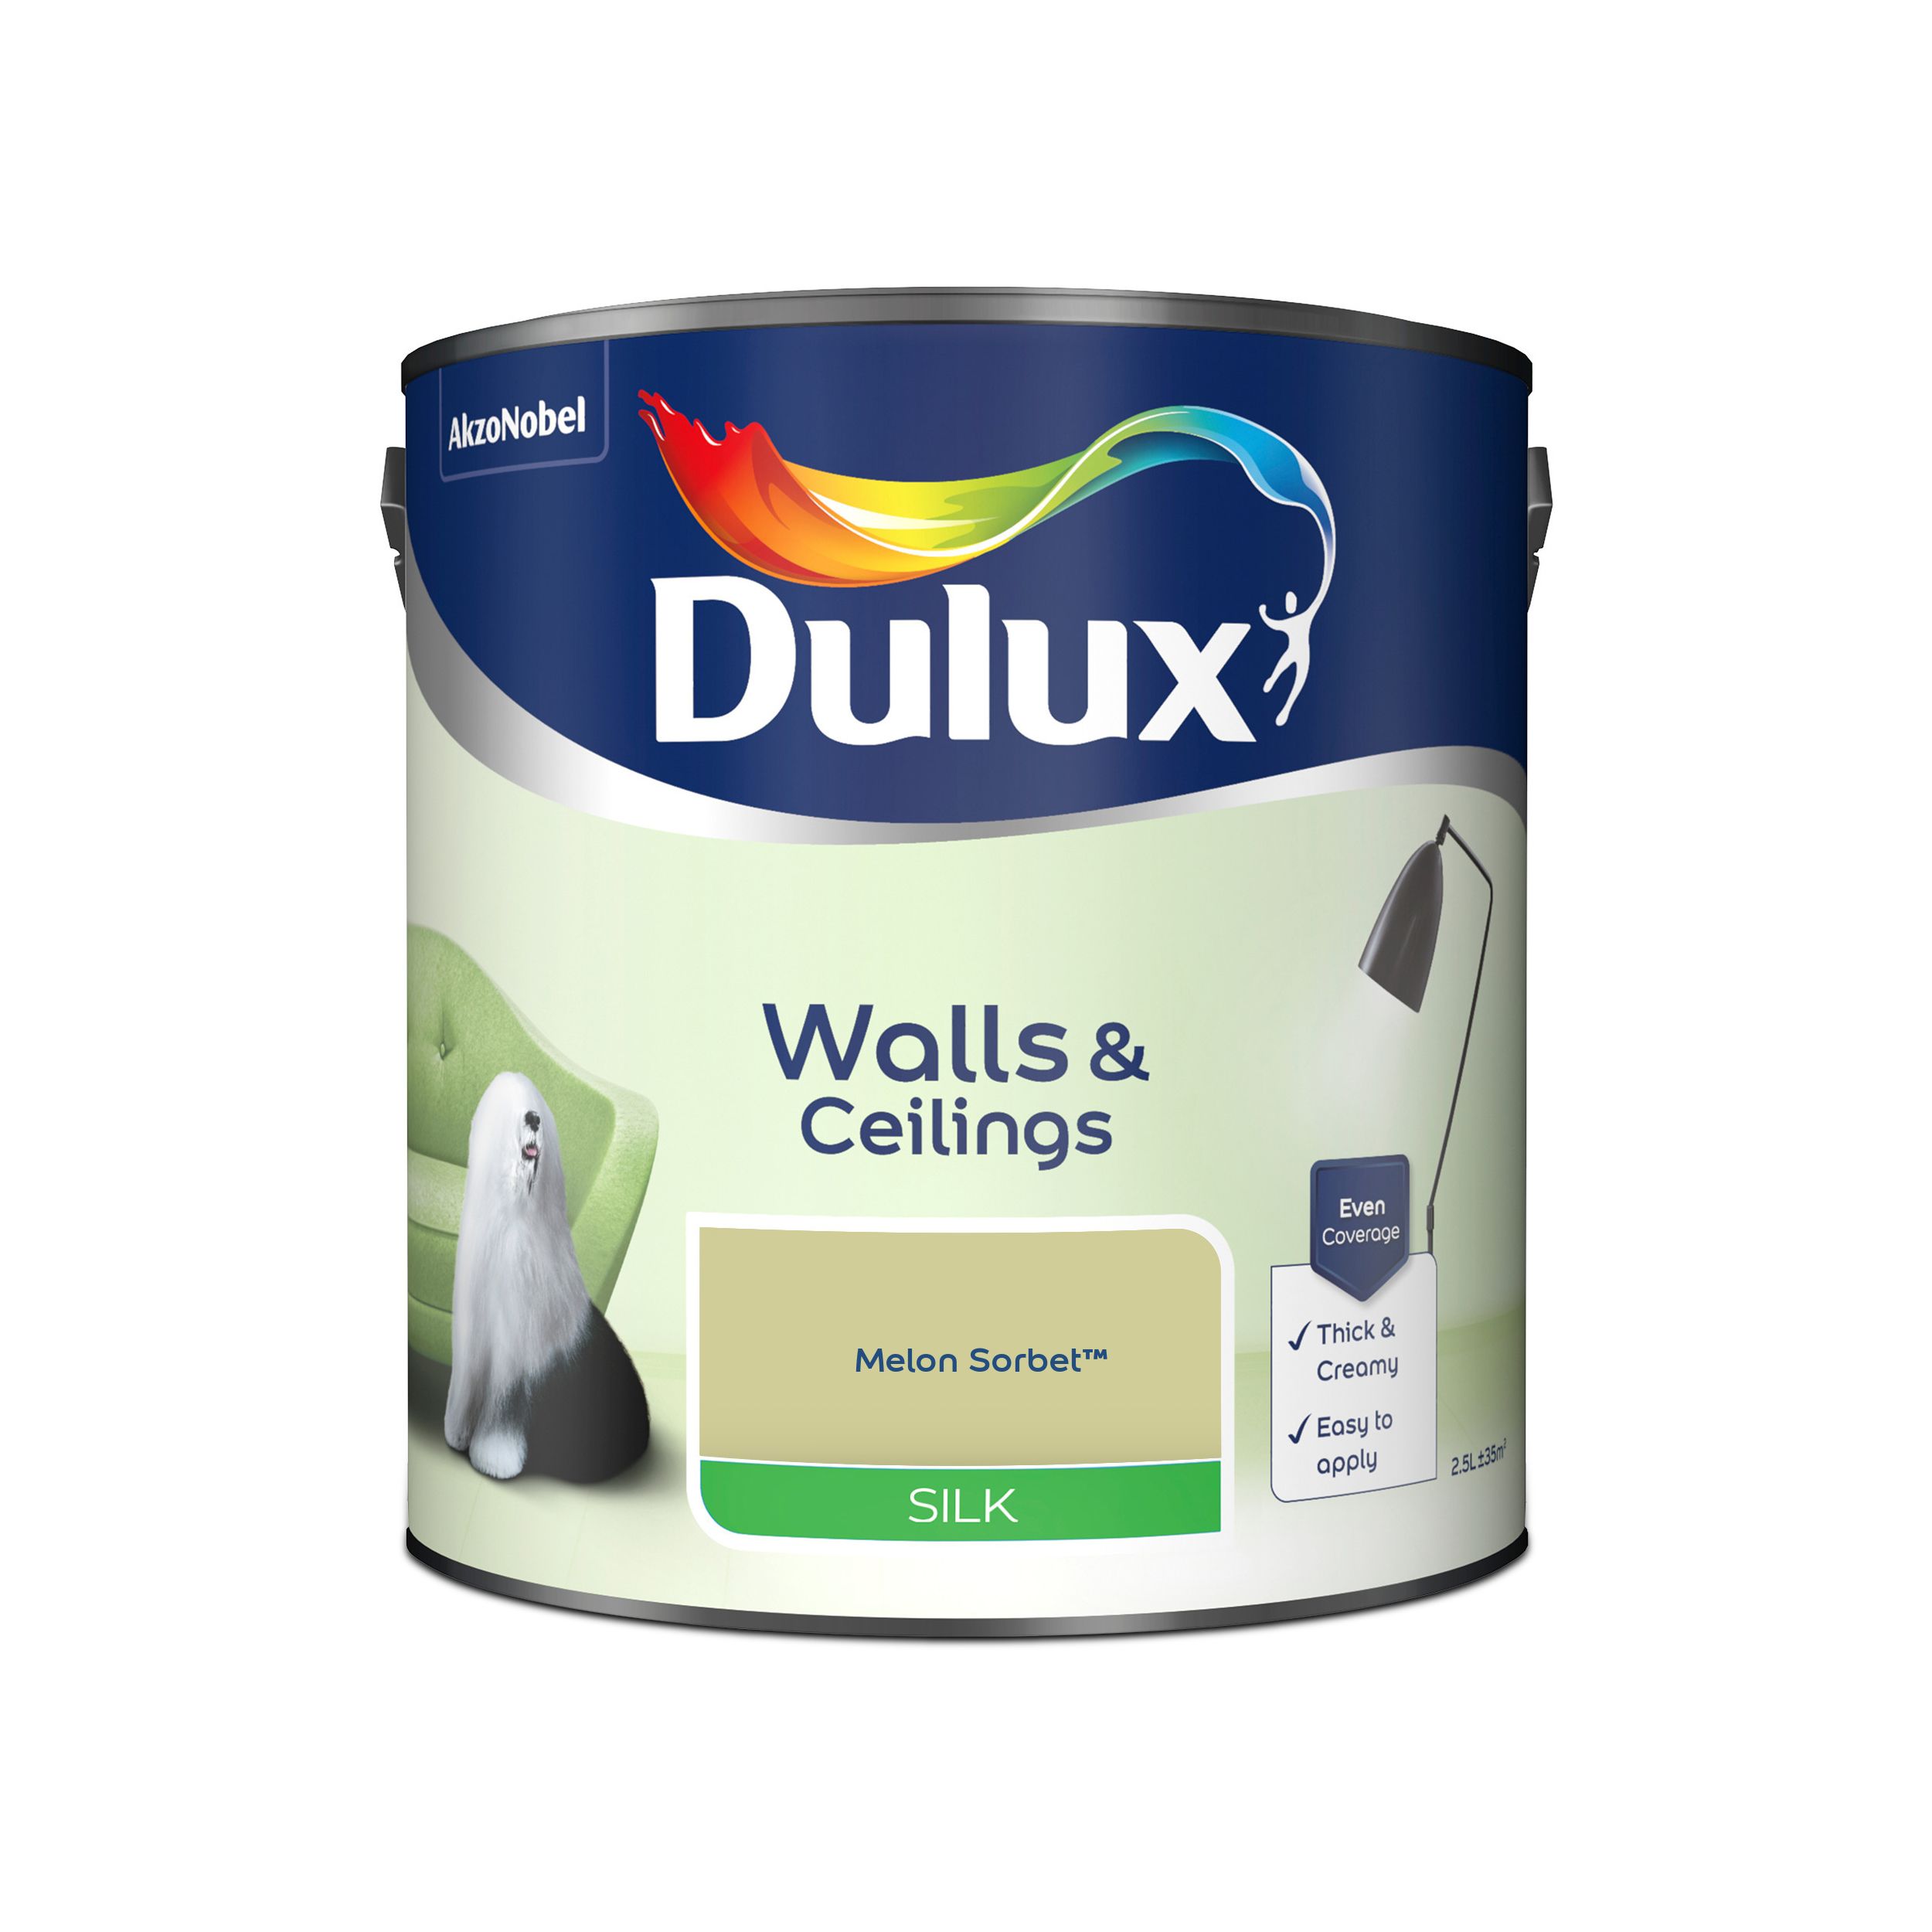 Dulux Walls & ceilings Melon sorbet Silk Emulsion paint, 2.5L